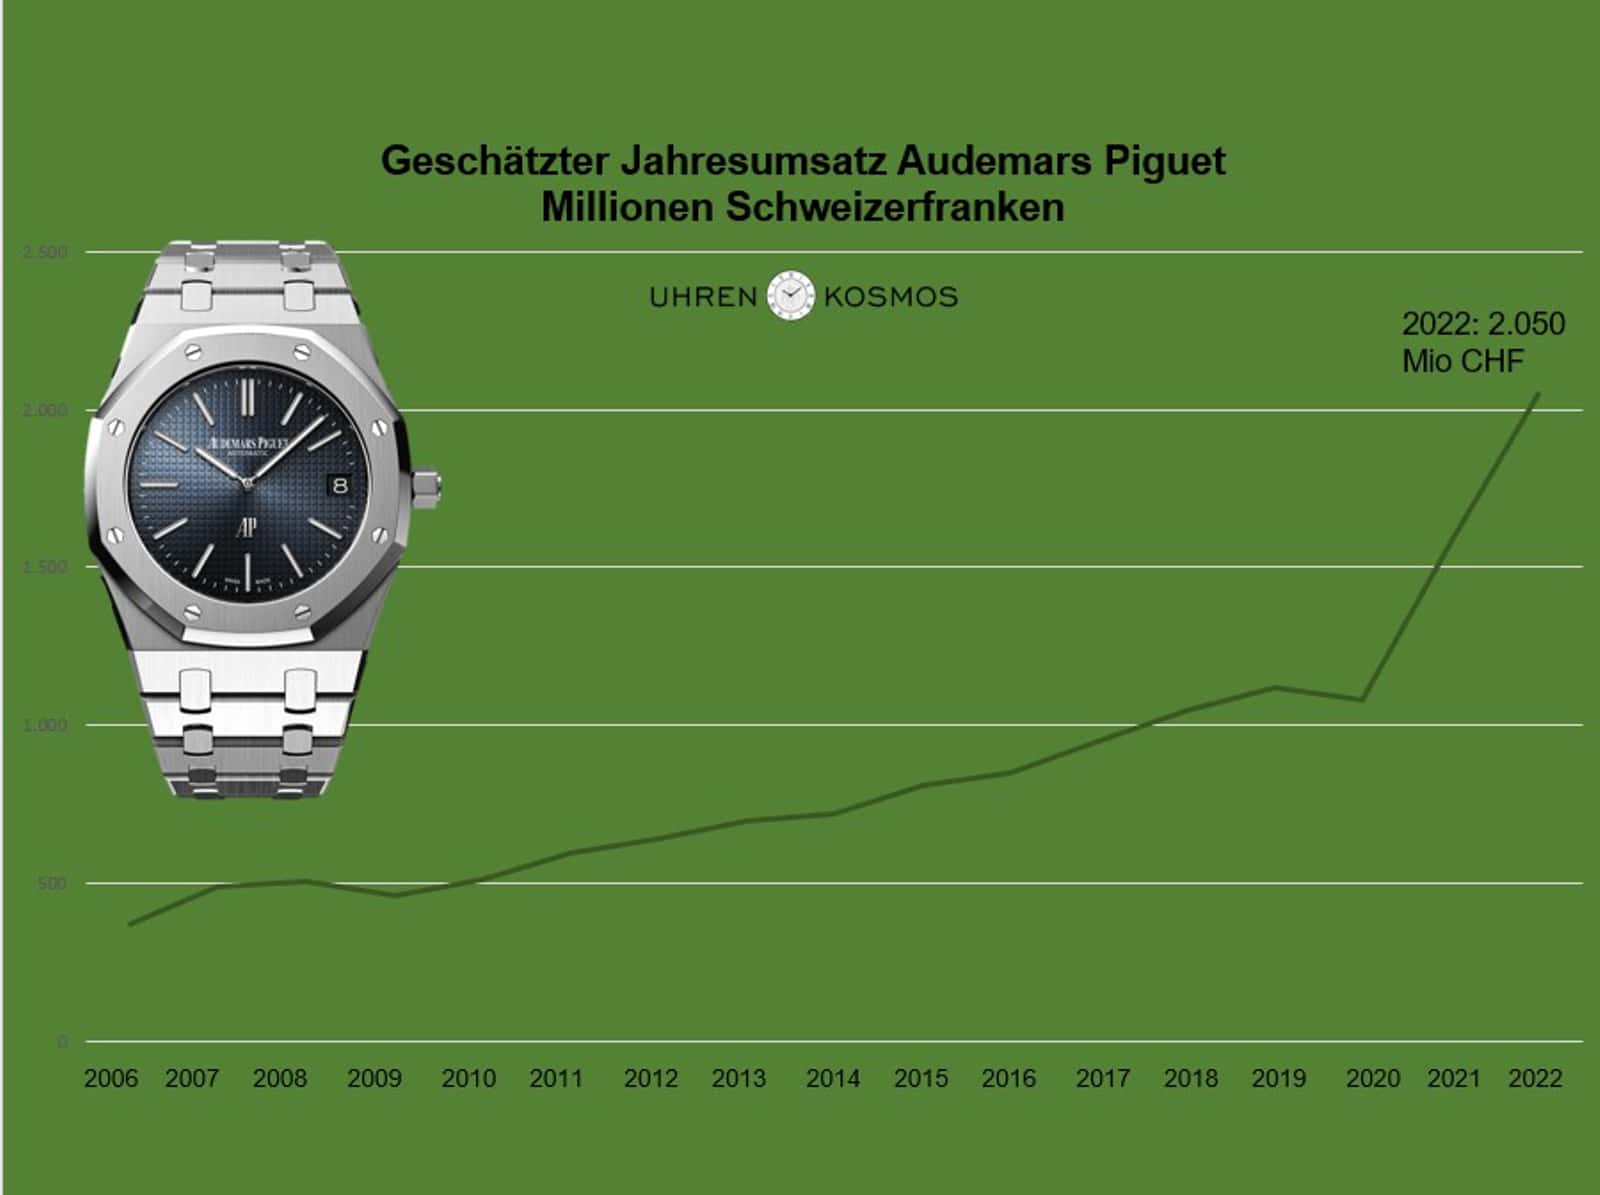 Umsatzentwicklung Audemars Piguet 2006 - 2022 